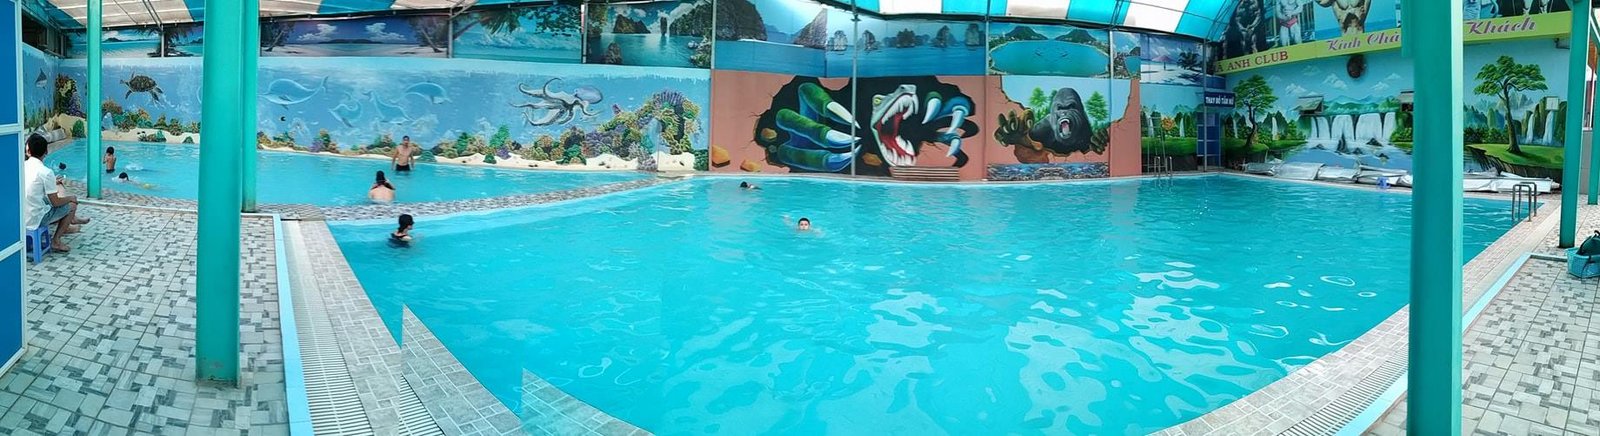 Bể bơi trong phòng gym tại thành phố Sơn La